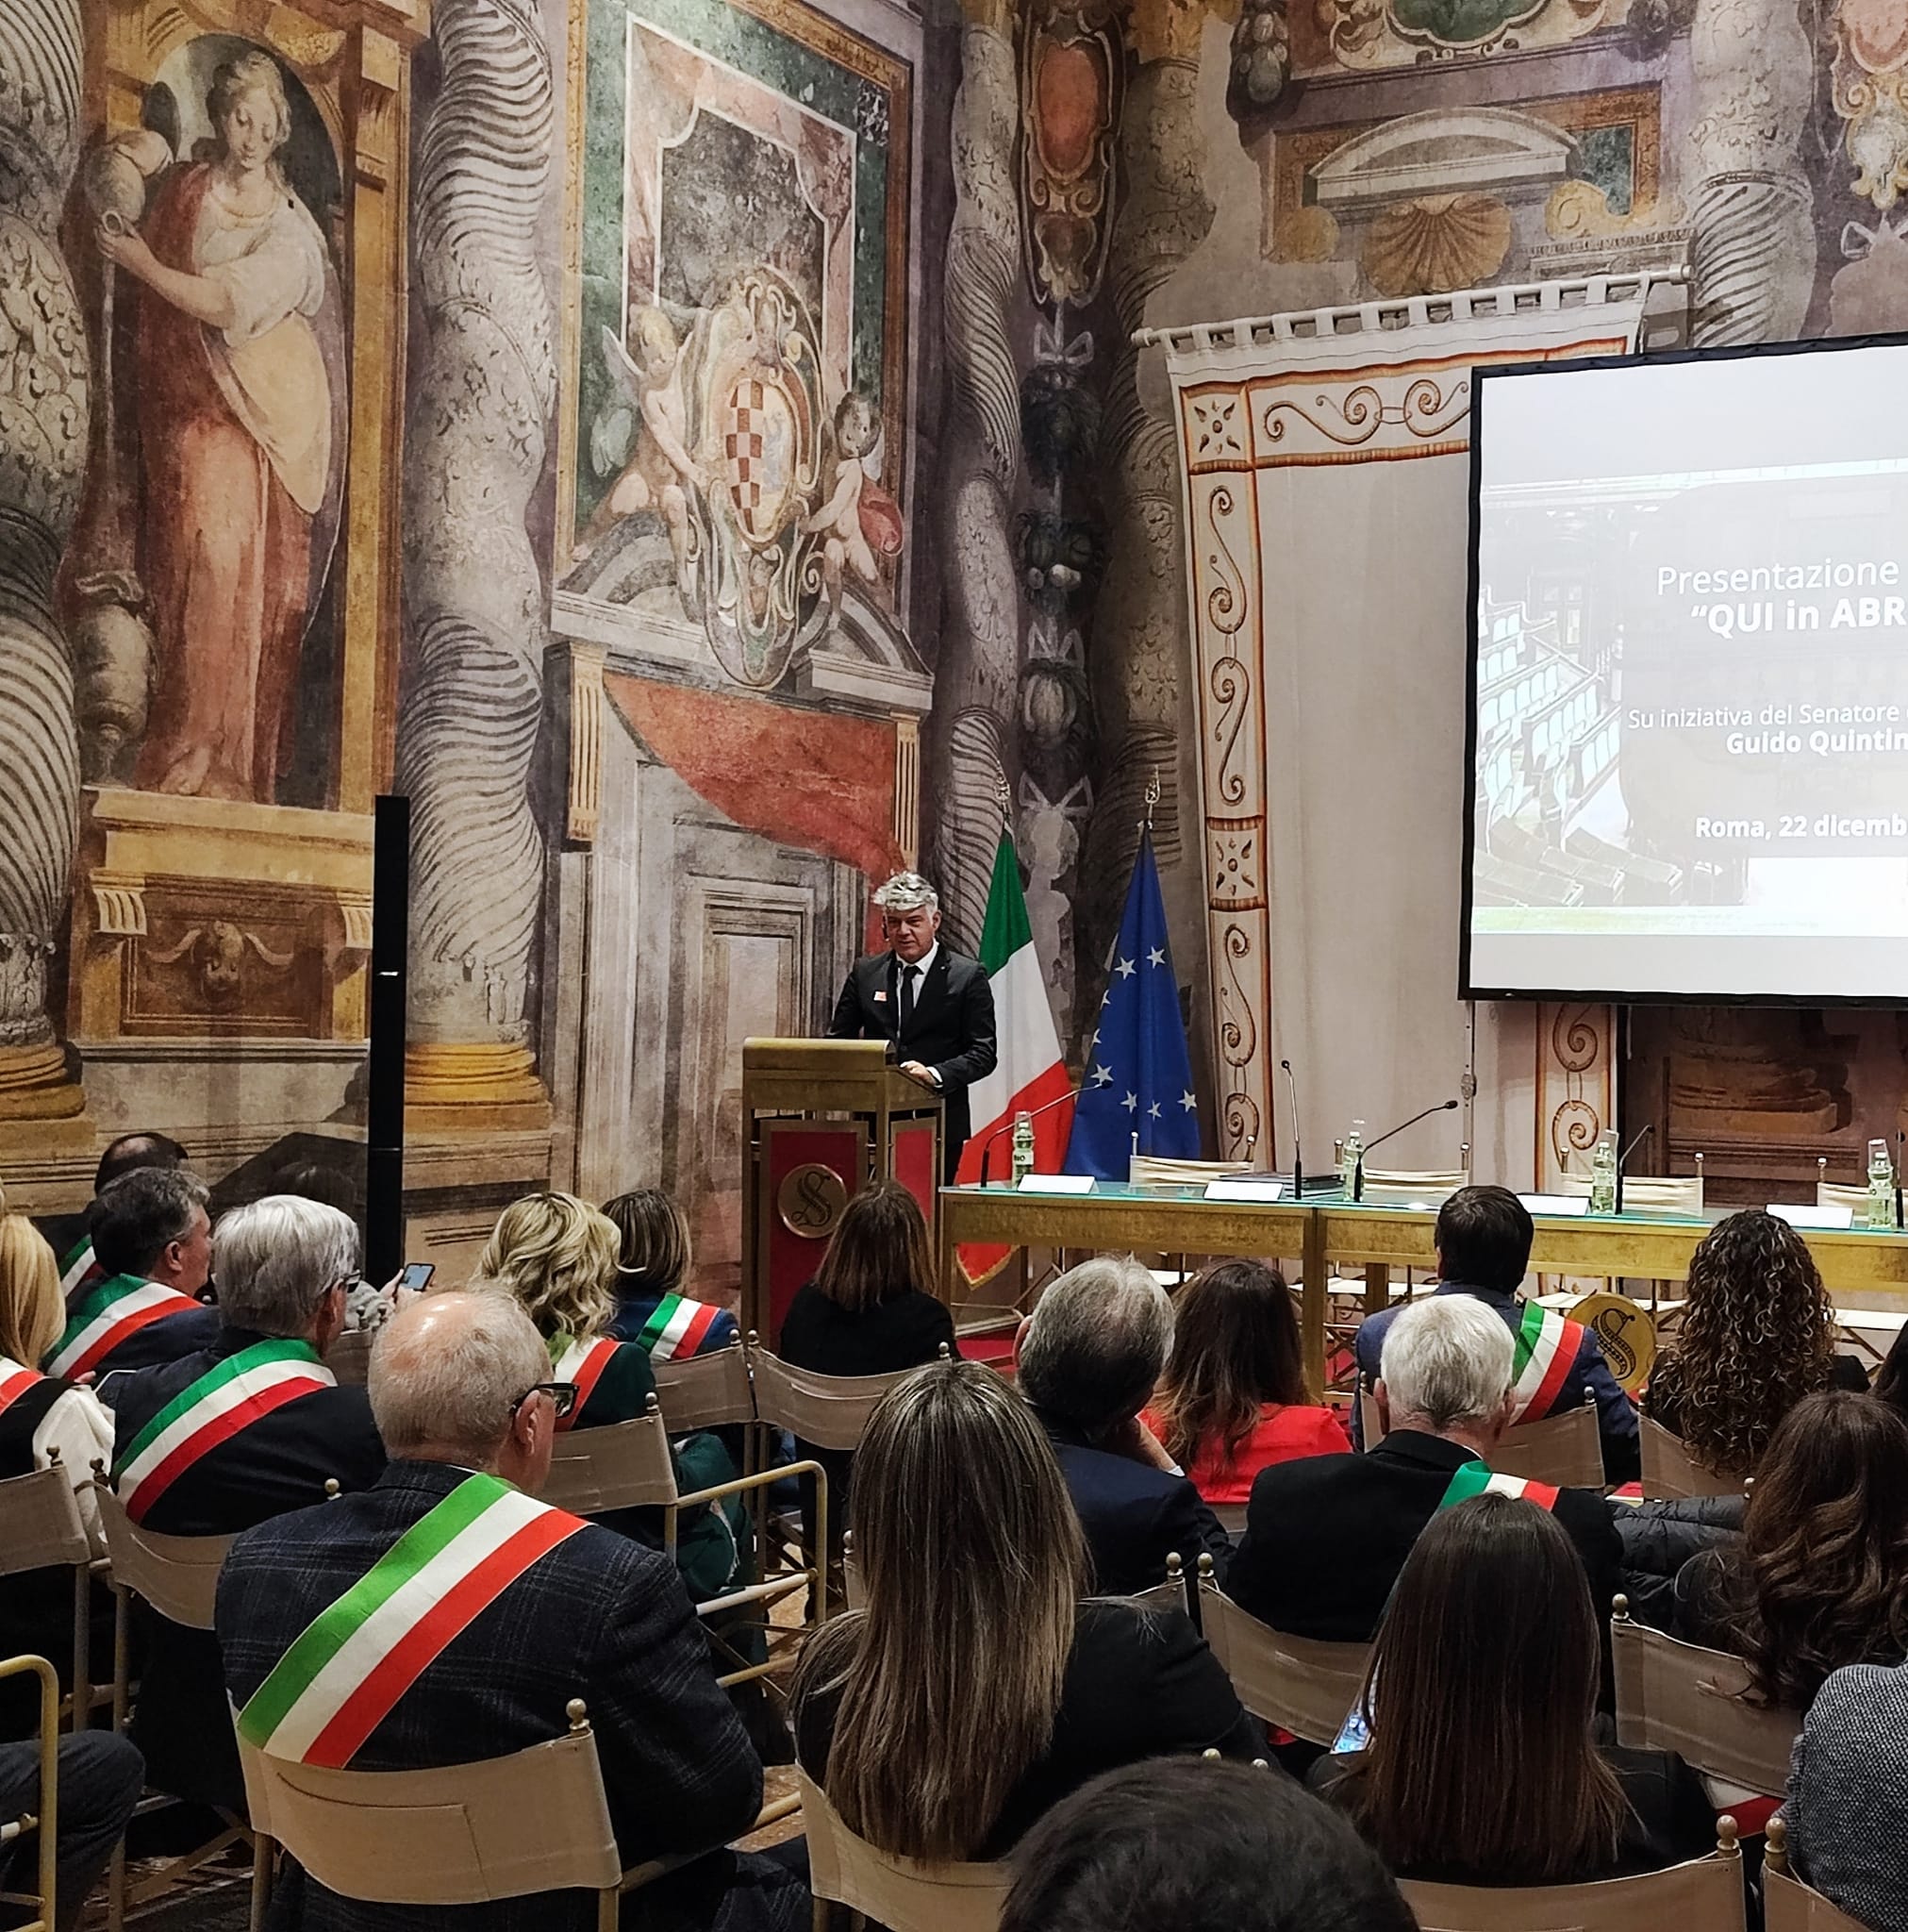 Senato della Repubblica, Sala Zuccari Palazzo Giustiniani: la scrittura come arte che celebra l’Abruzzo